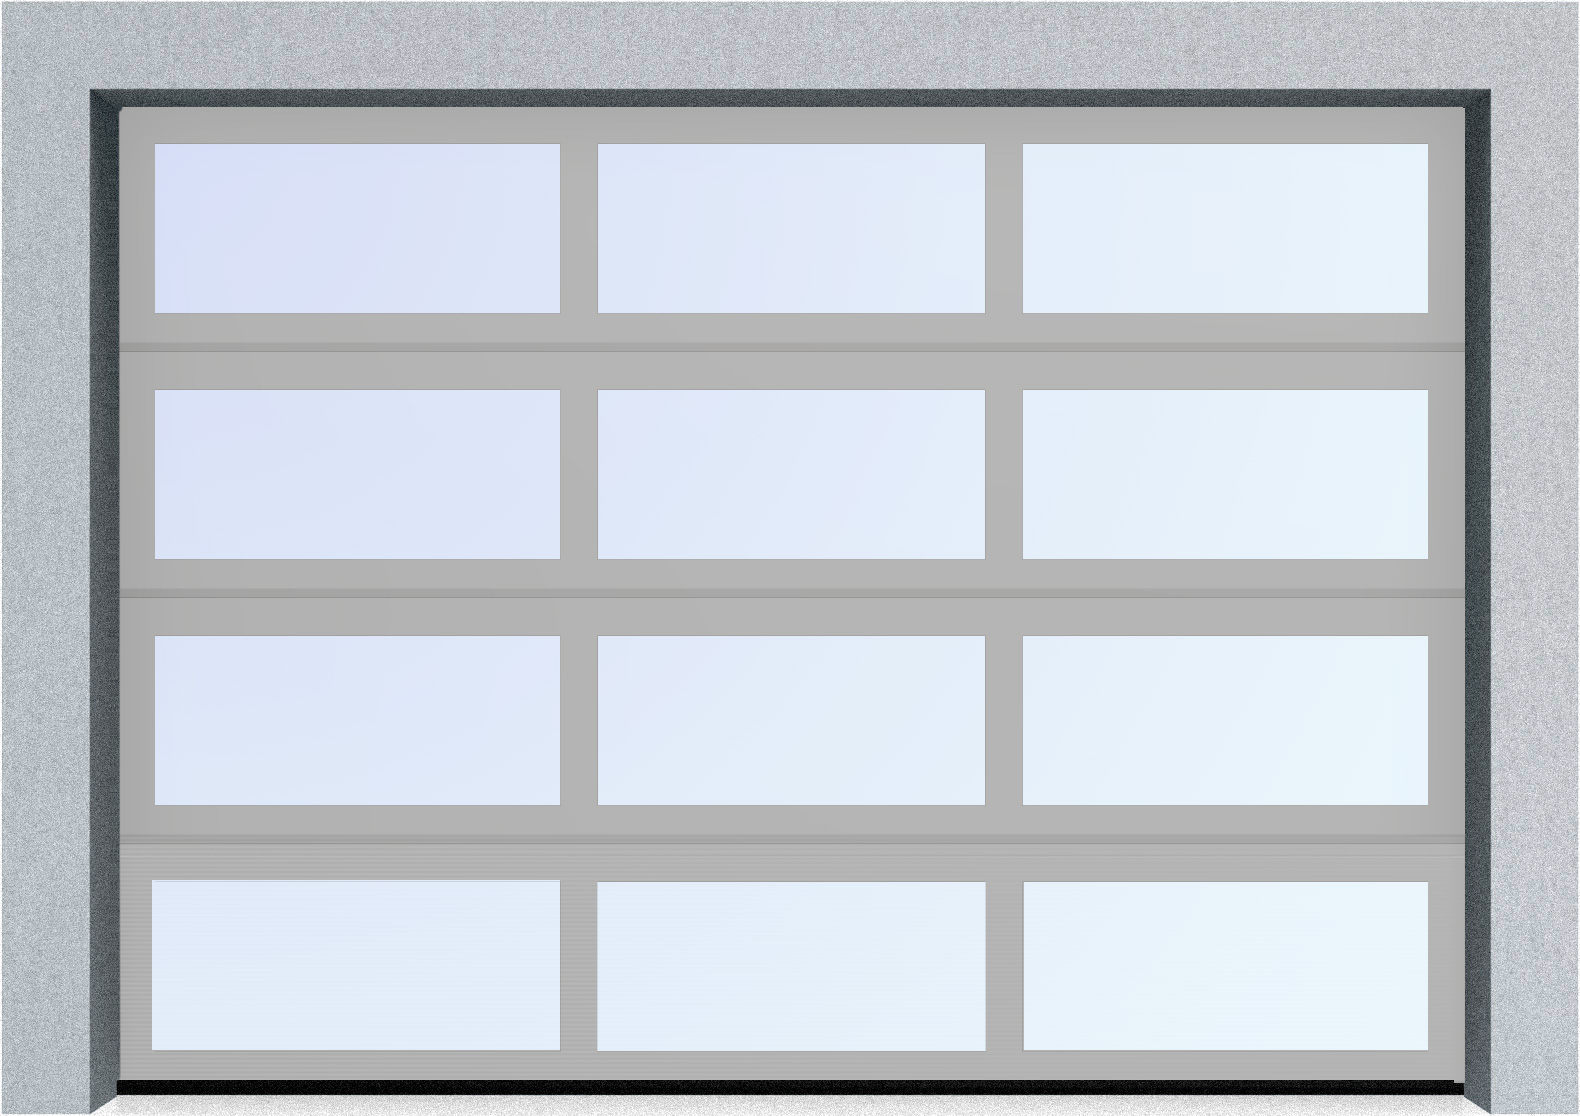  Секционные панорамные ворота серии AluTrend (АЛП) 6375х4500 нижняя панель стандартные цвета, фото 9 